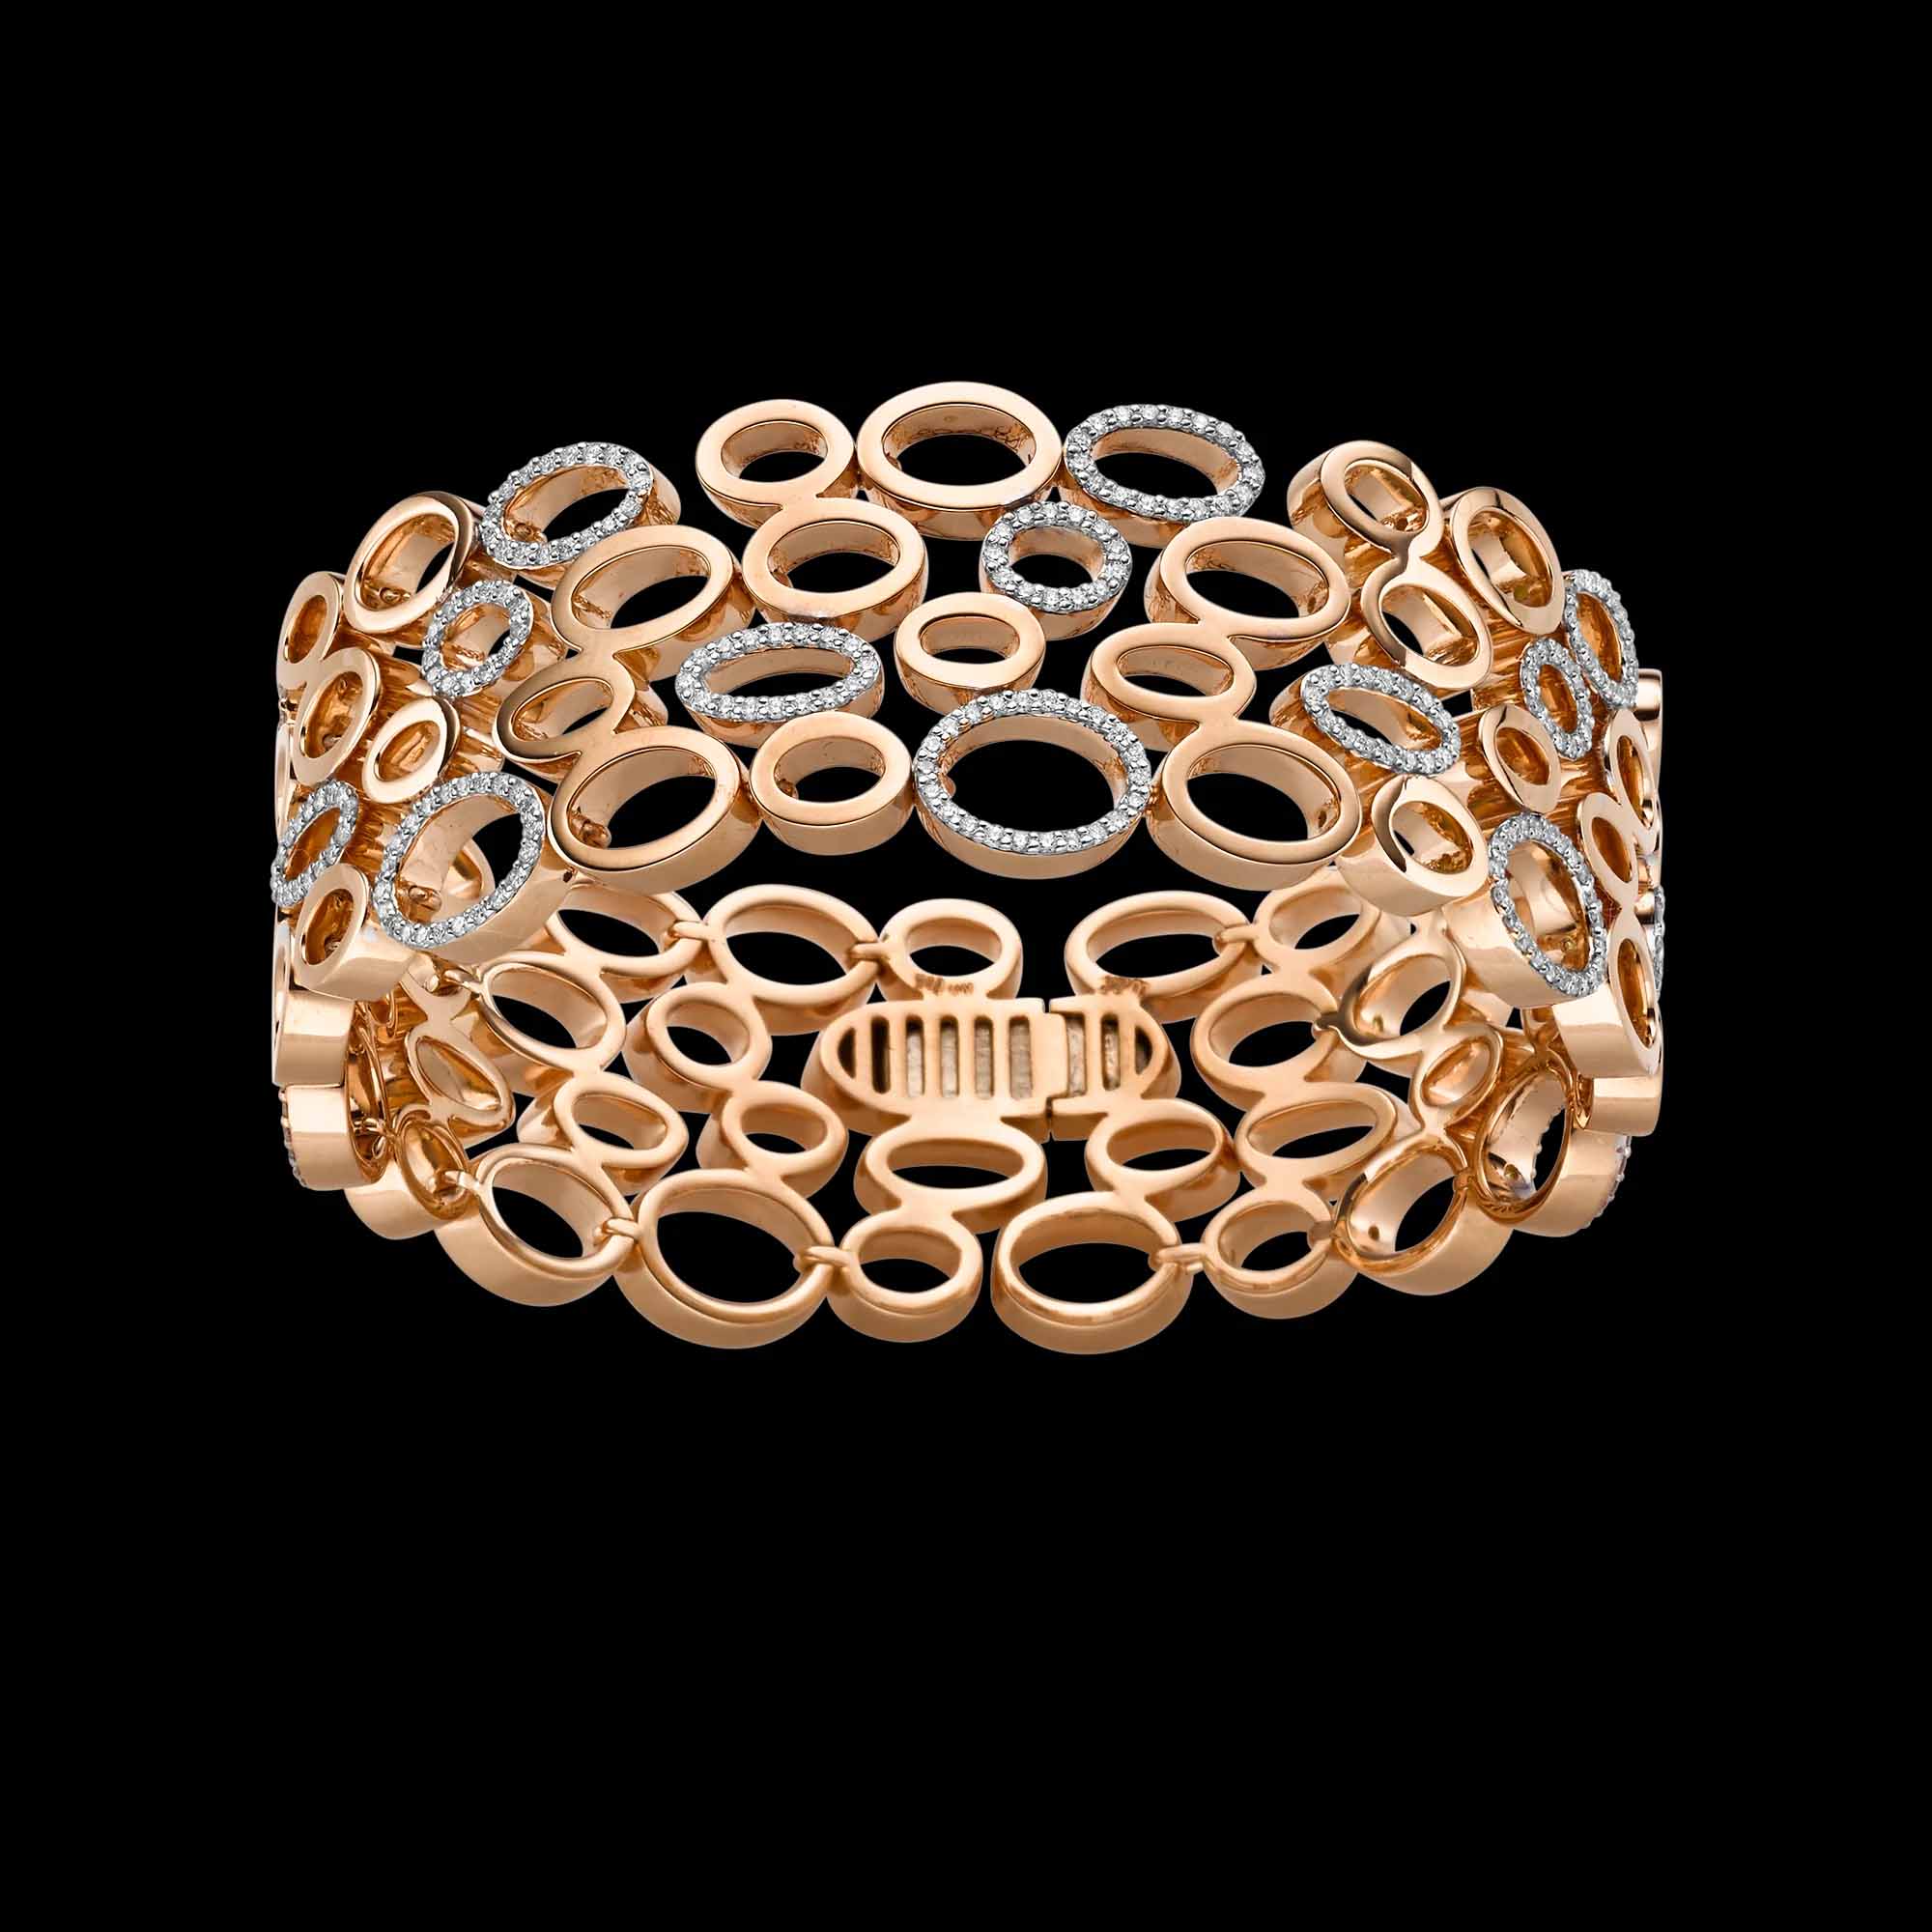 Wholesale custom sterling silver chain bracelet Wholesale OEM/ODM Jewelry CZ Fashion Jewelry Distributor